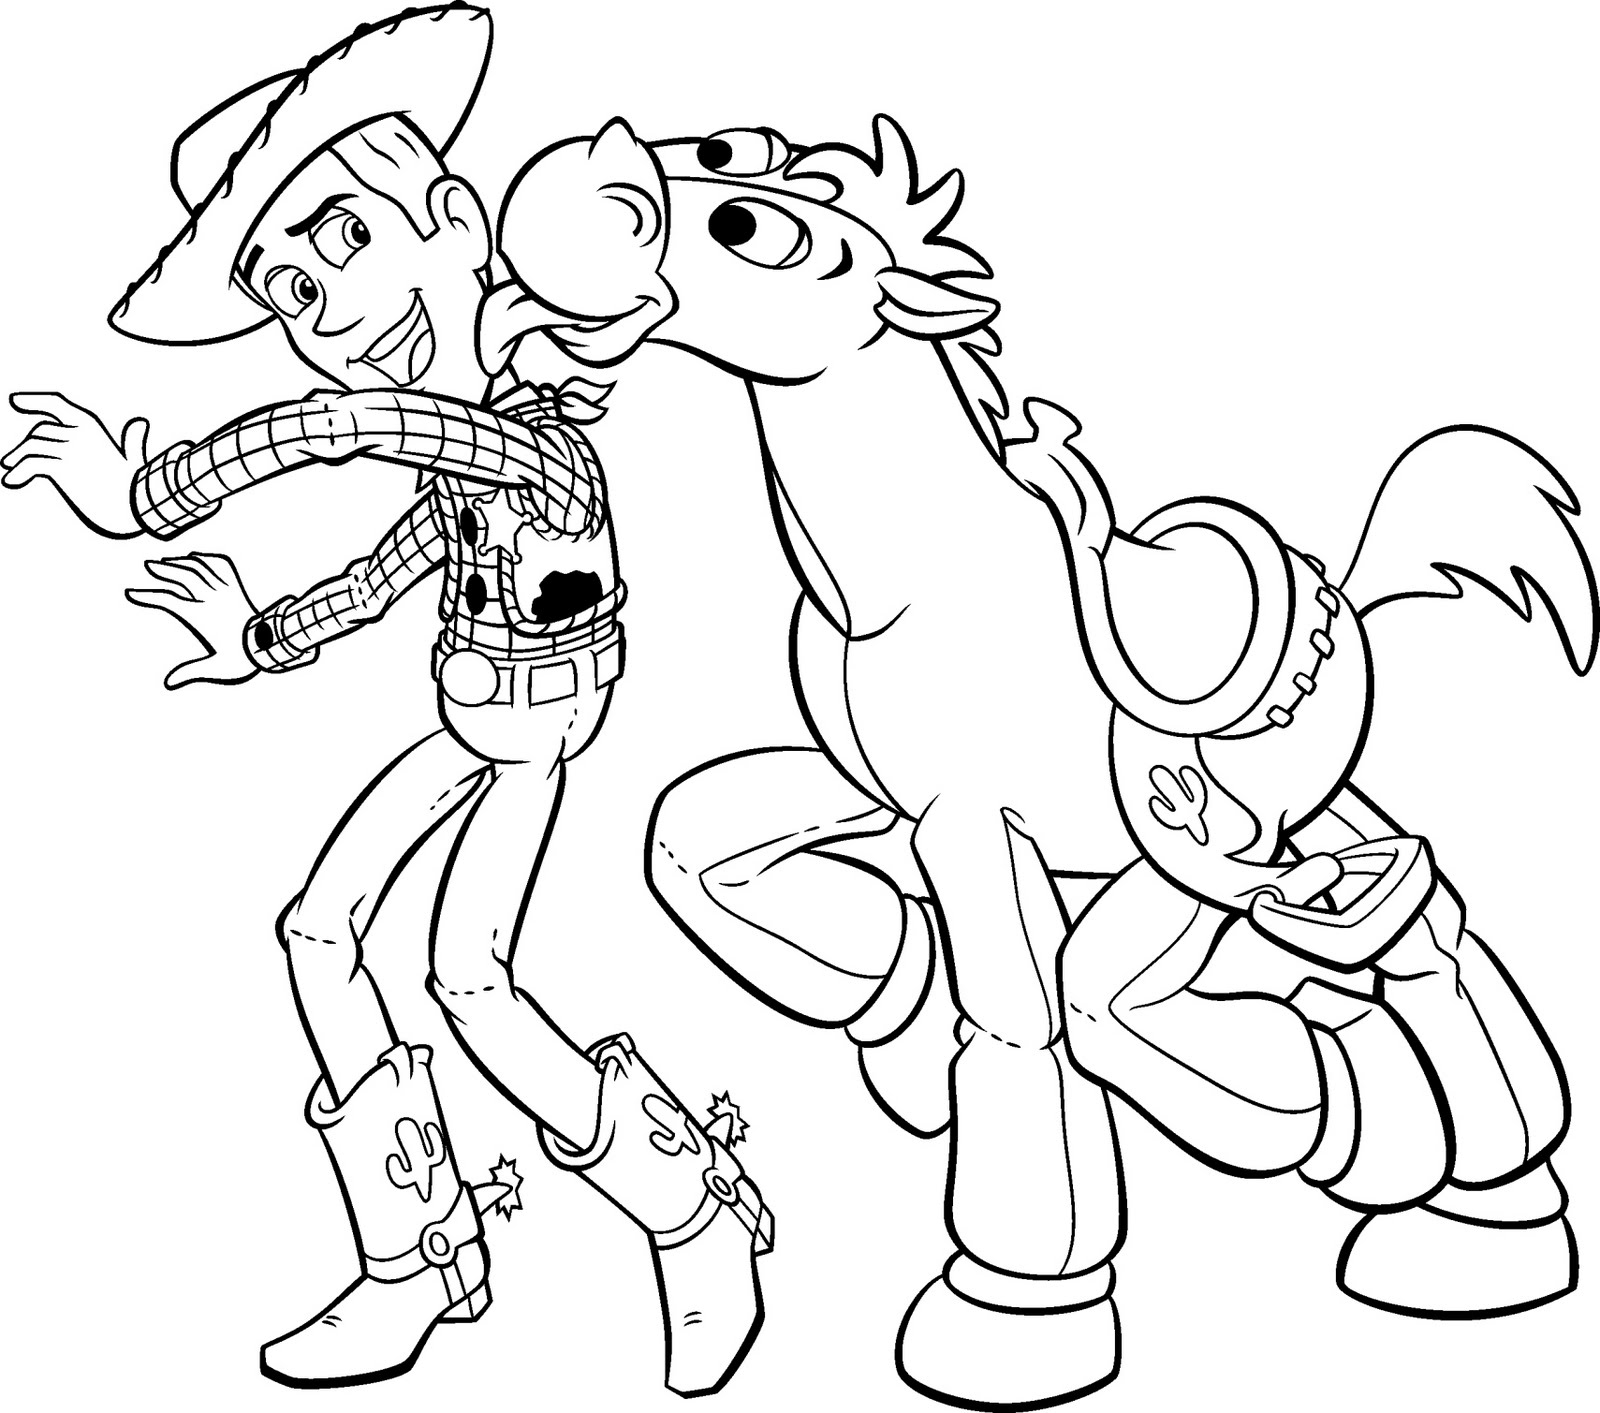 Woody e o seu fiel corcel Dada a ser colorido